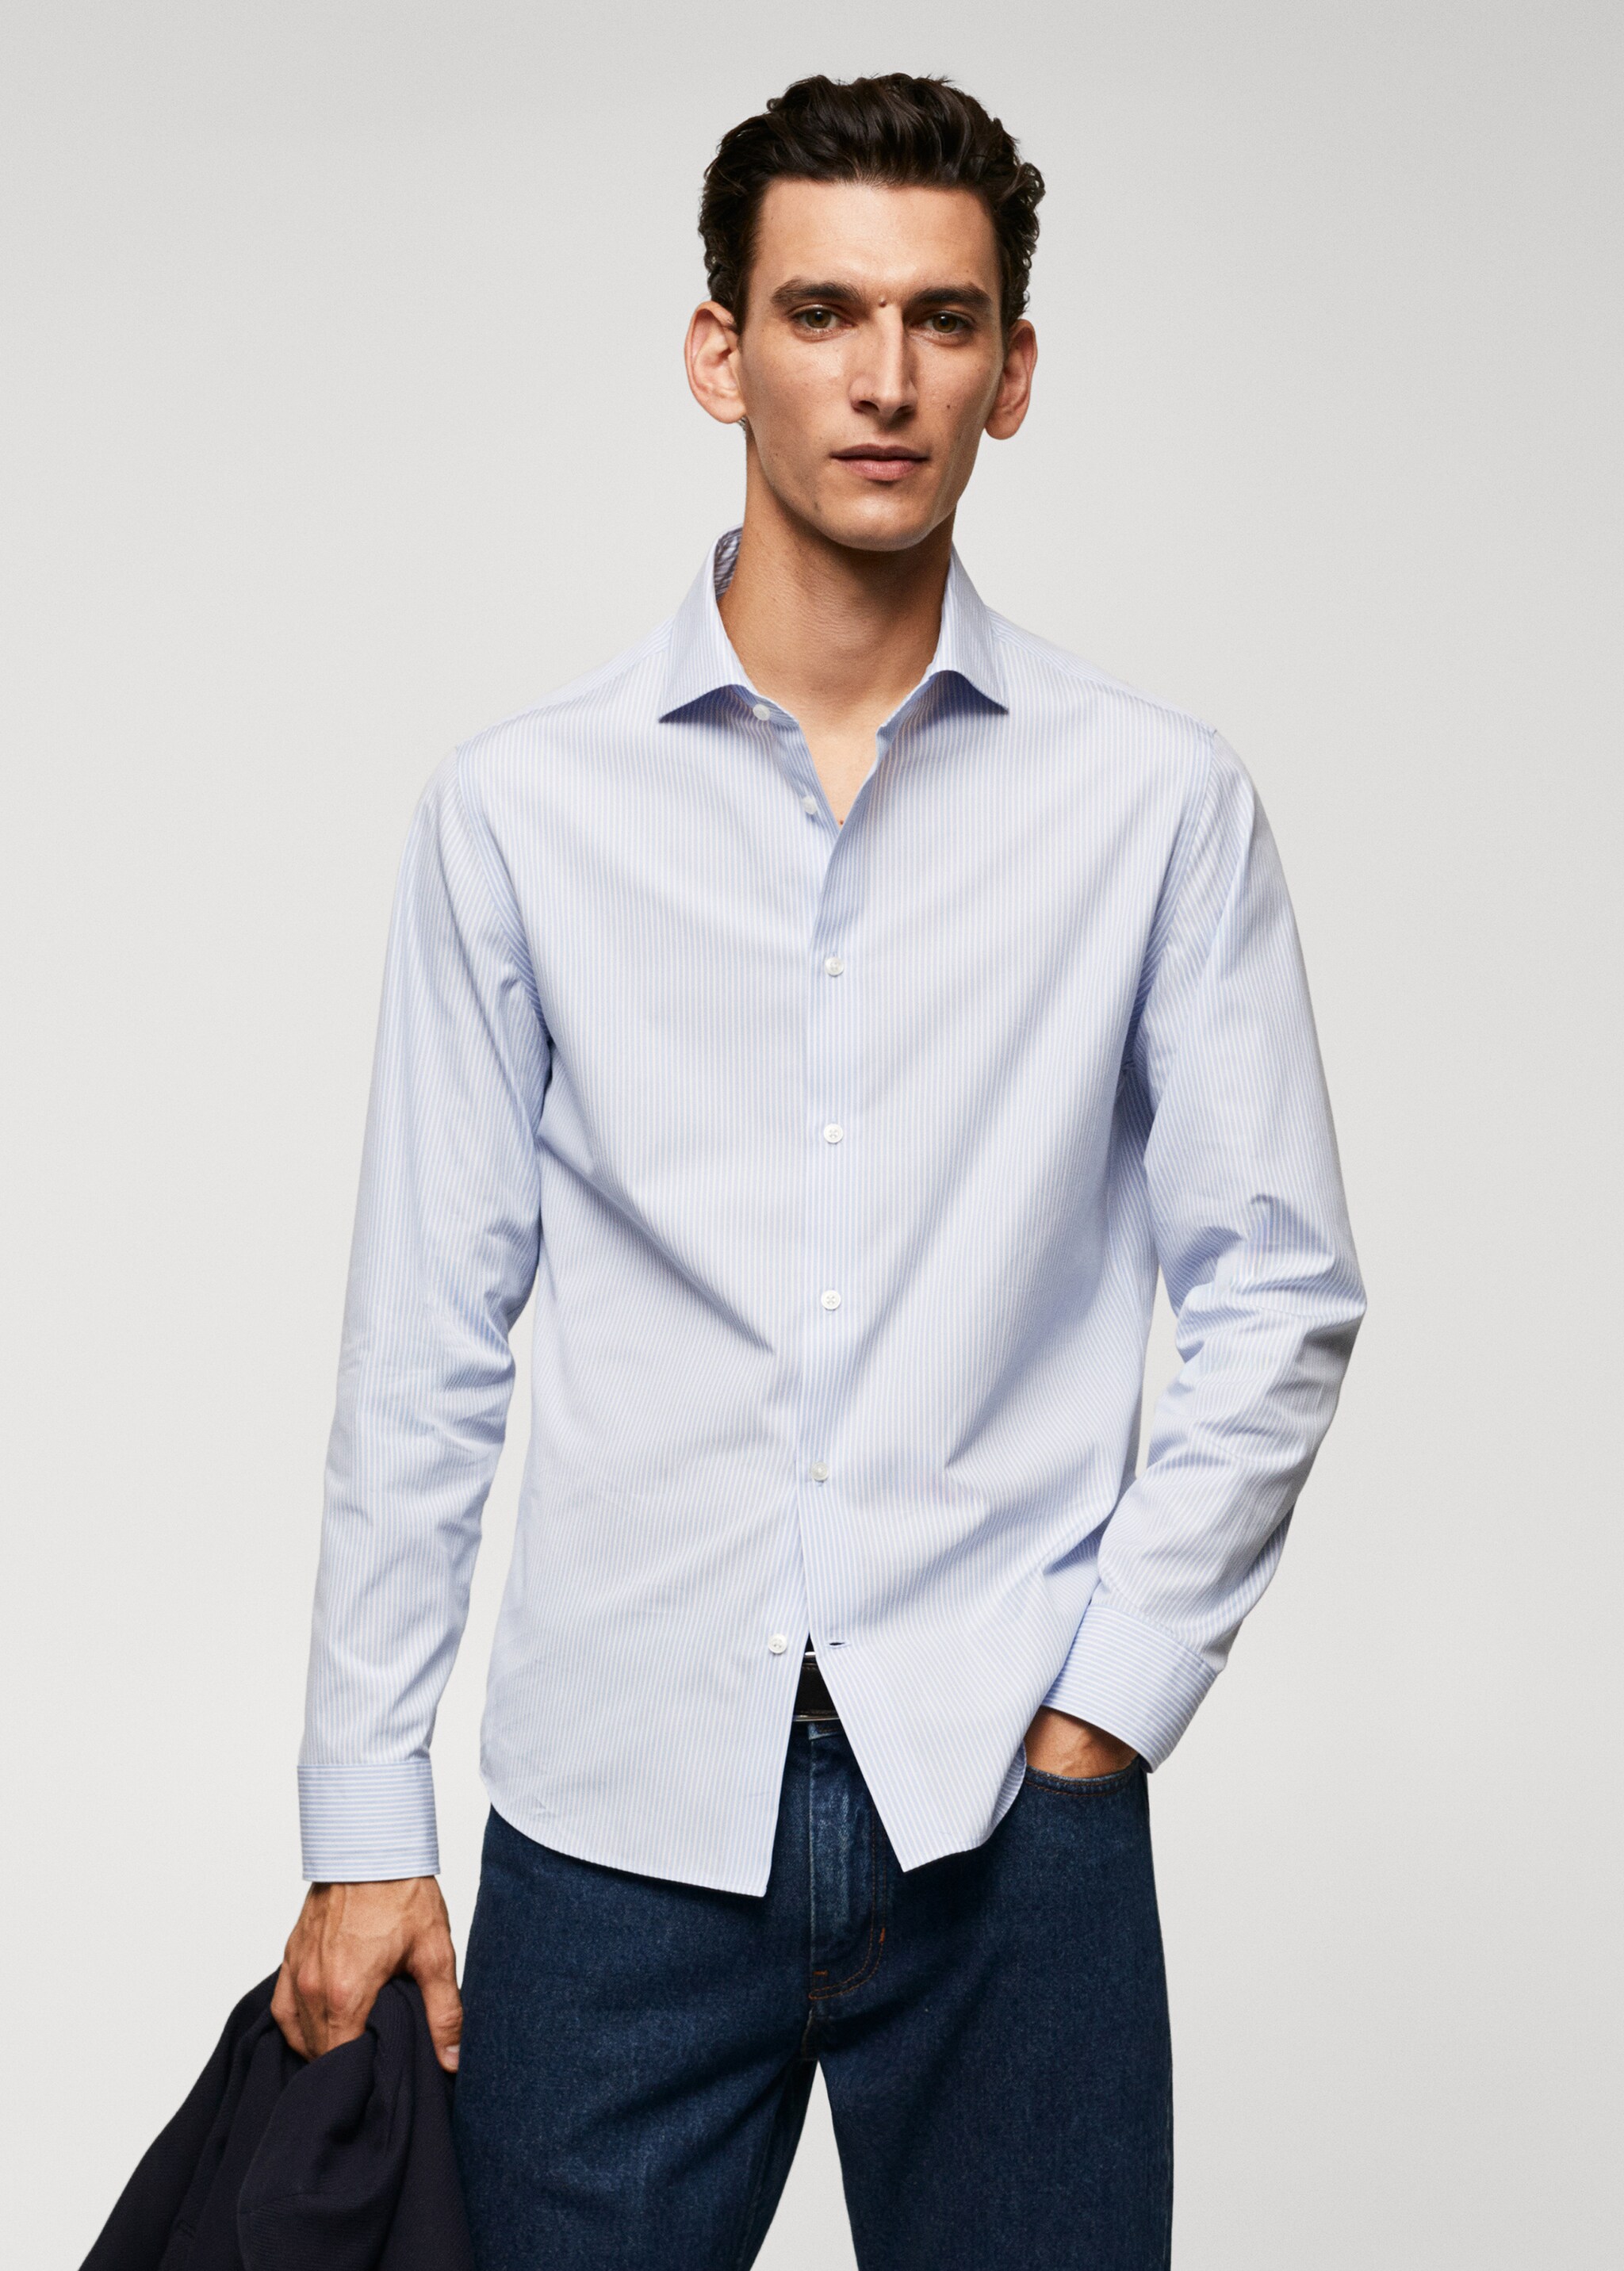 Camisa slim fit de 100% algodão - Plano médio